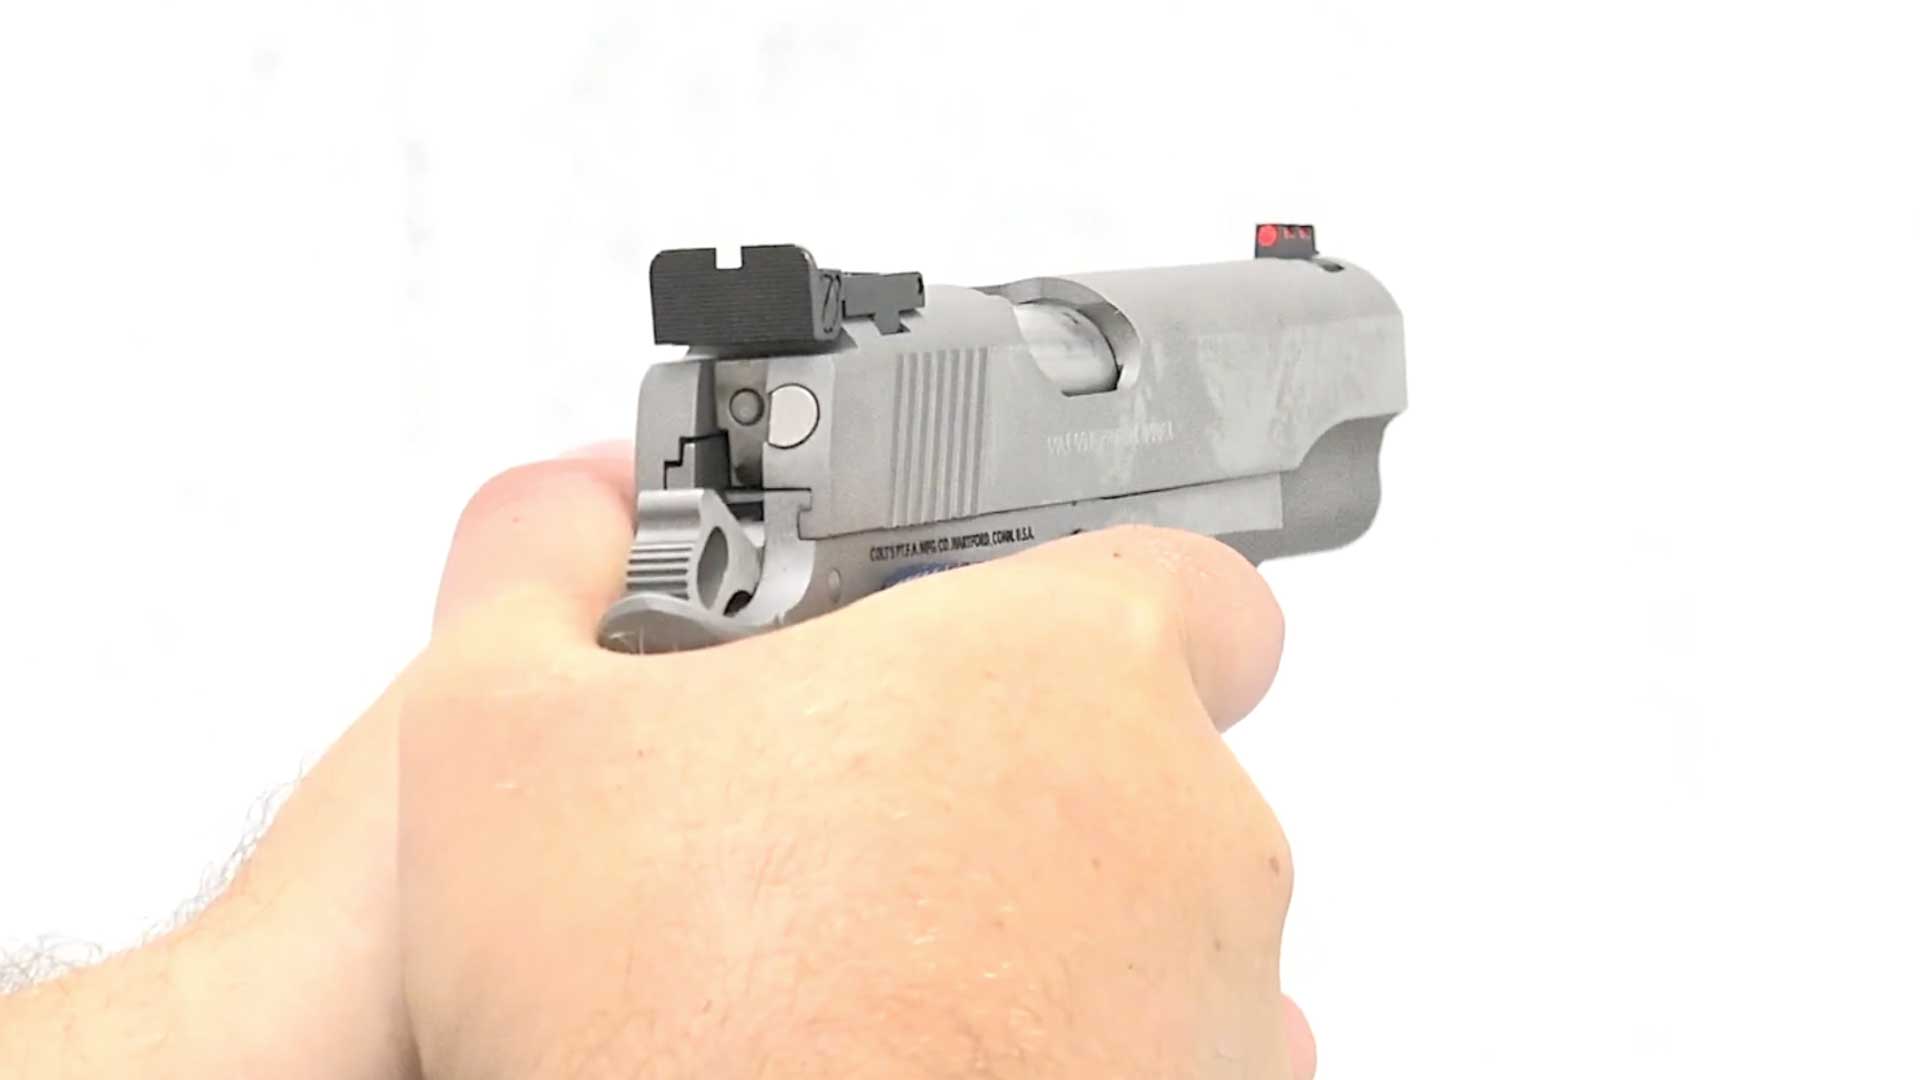 hands gun pistol handgun shooting semi-automatic 1911 colt 45